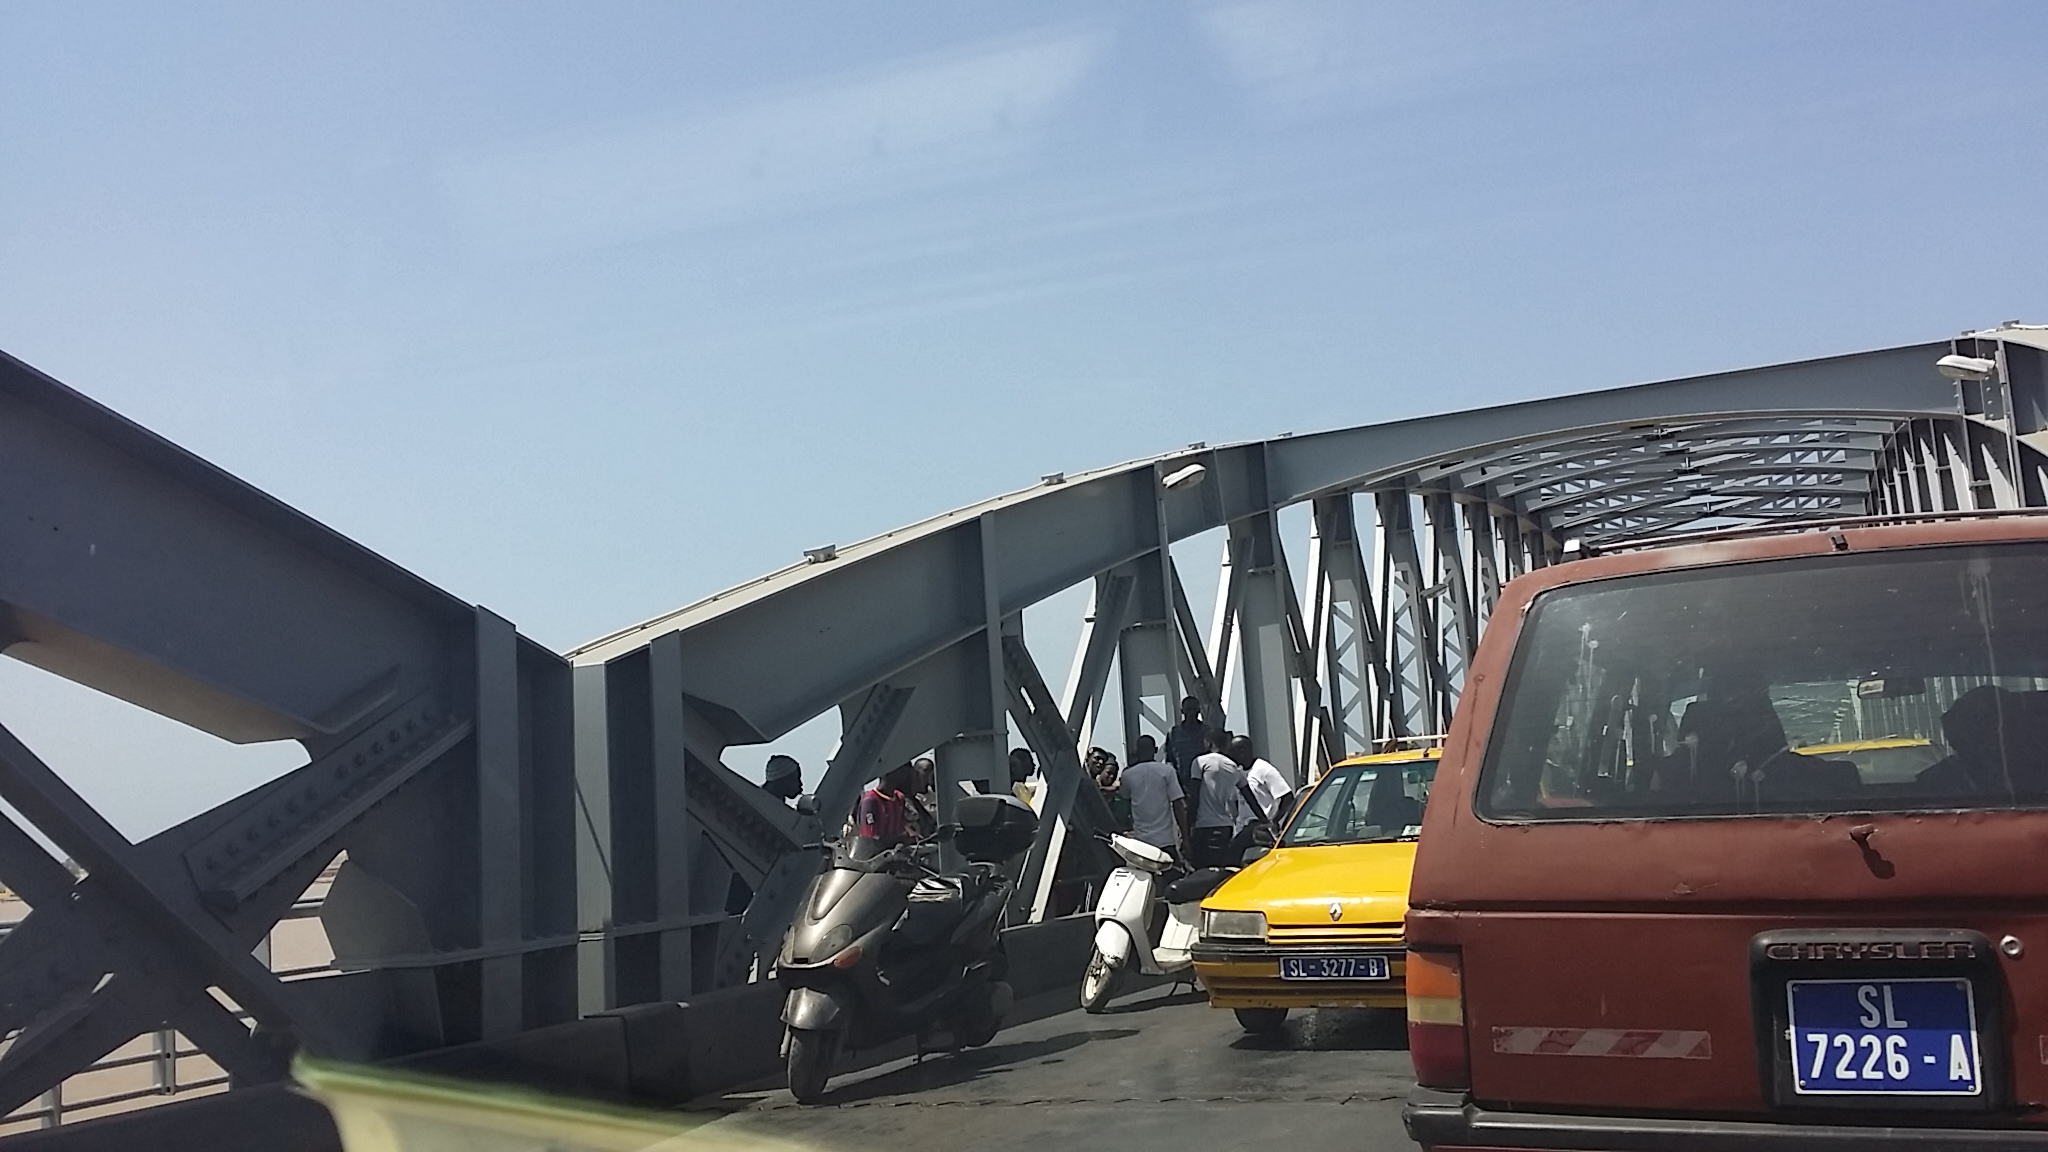 Dernière minute - Accident sur le pont: deux scooters se tamponnent.